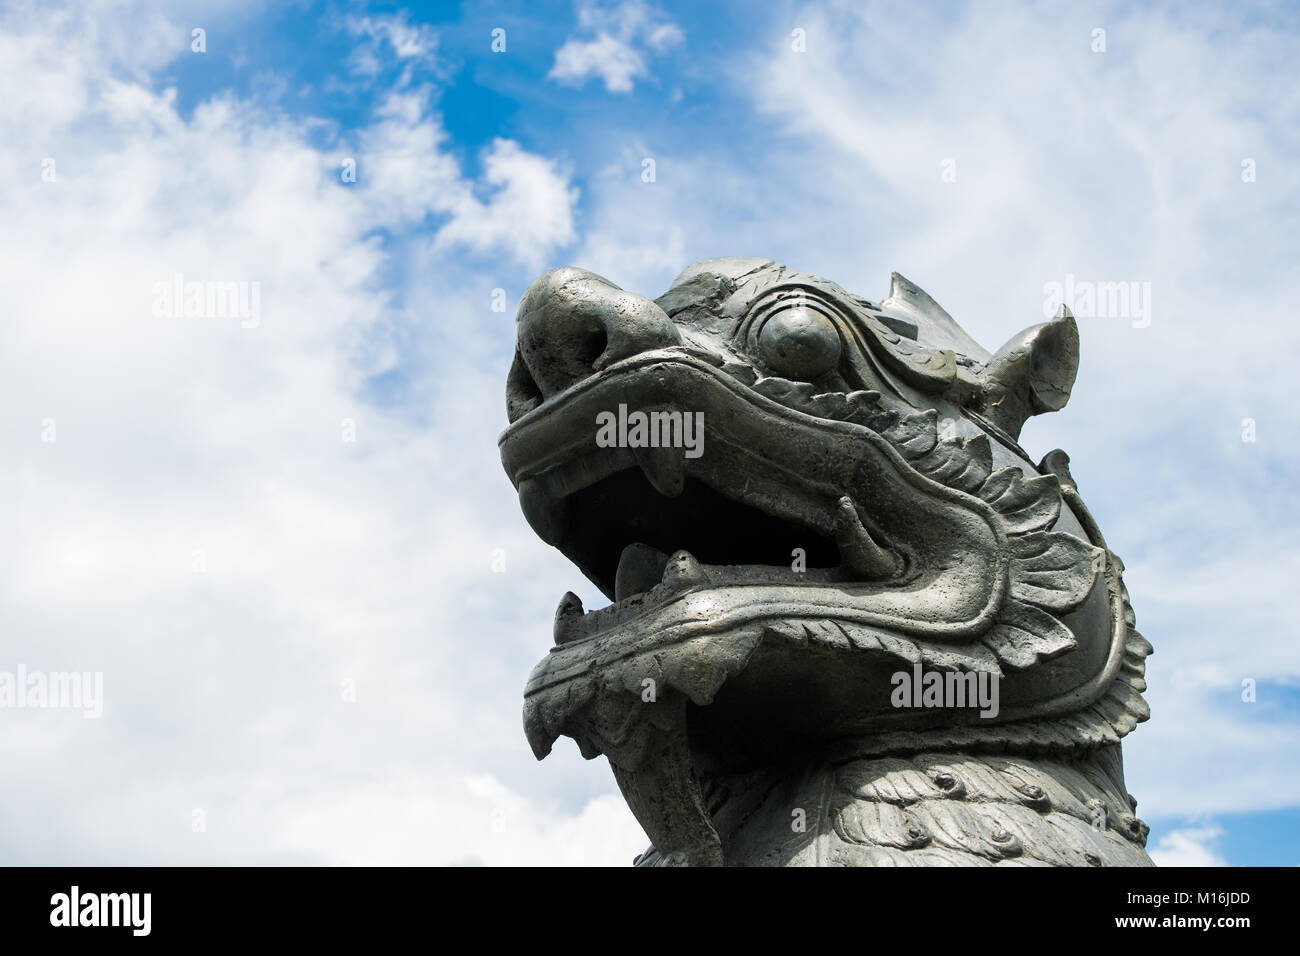 Gesicht und Zähne des Asiatischen Löwen Statue leogryph chinthe Metall grau an der Basis der Burma Independence Monument Obelisken, Yangon, Myanmar, Birma, Se Asien Stockfoto